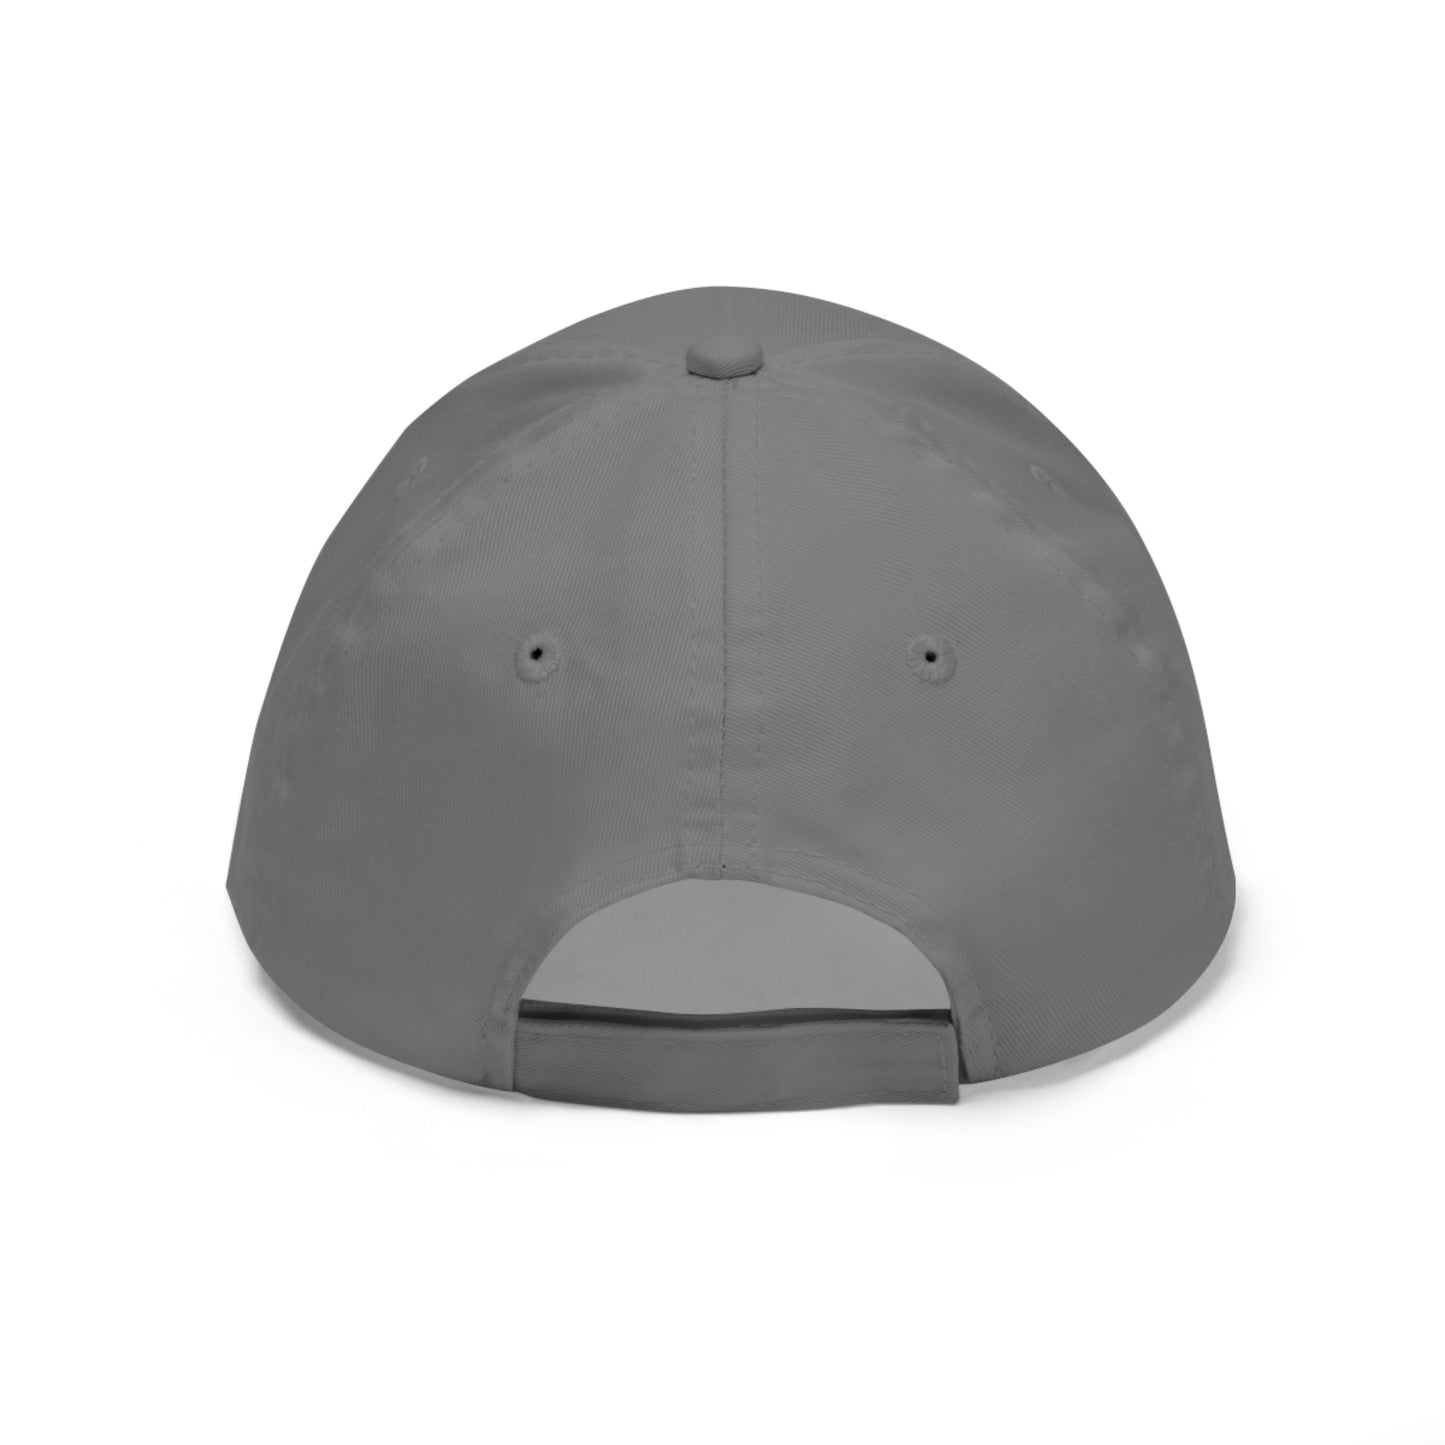 Troop 121 Hat